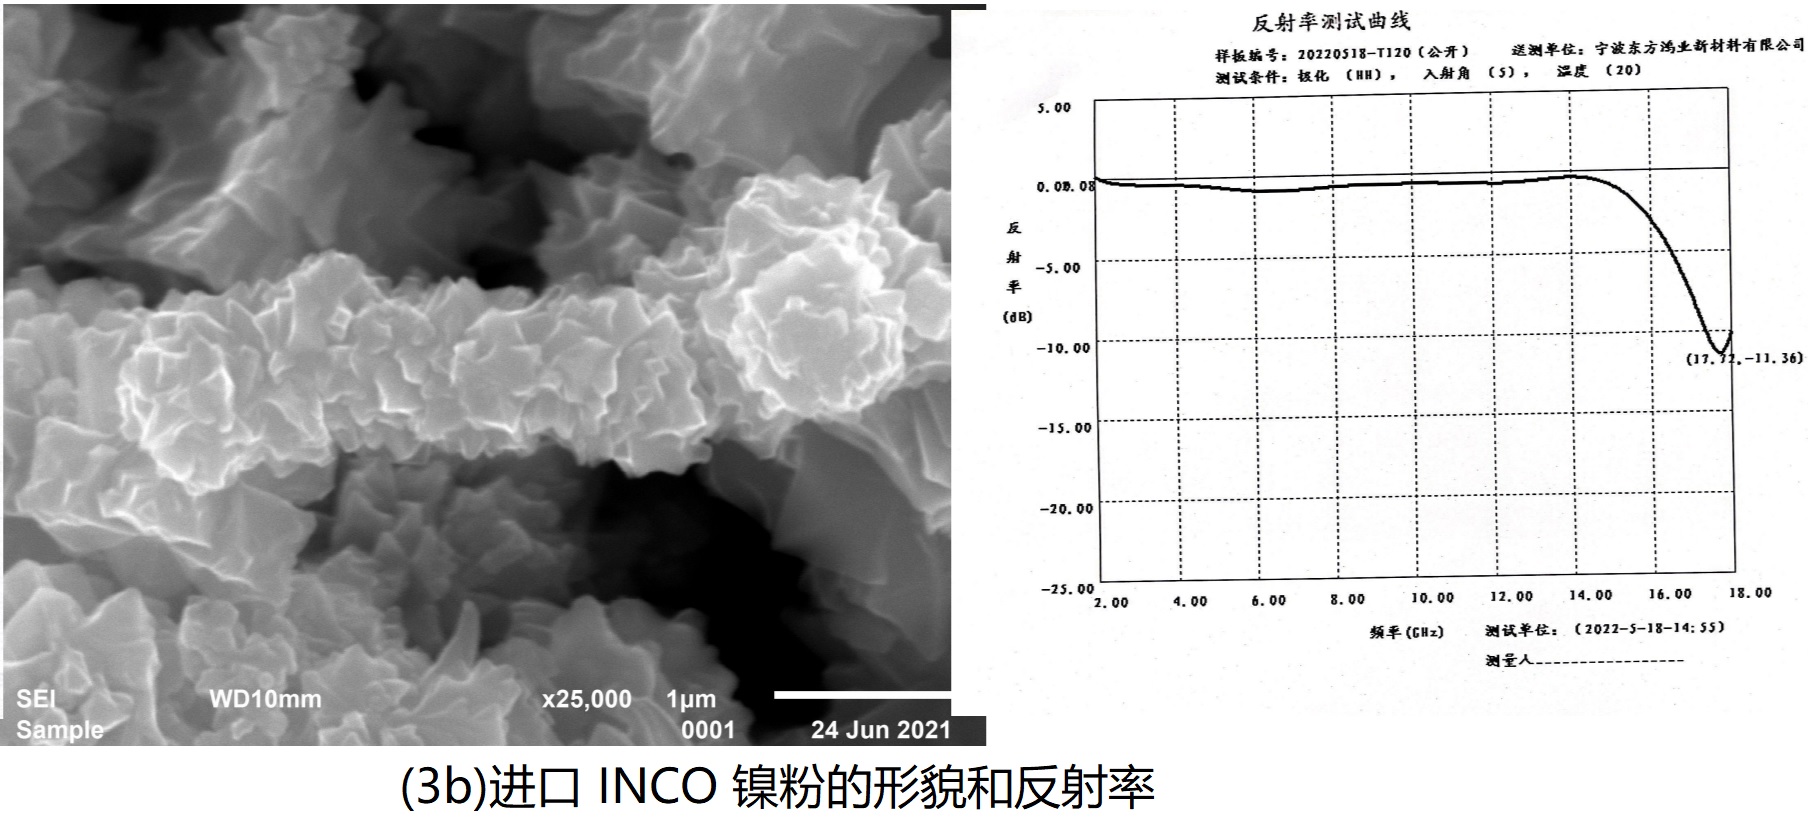 进口 INCO 镍粉的形貌和反射率